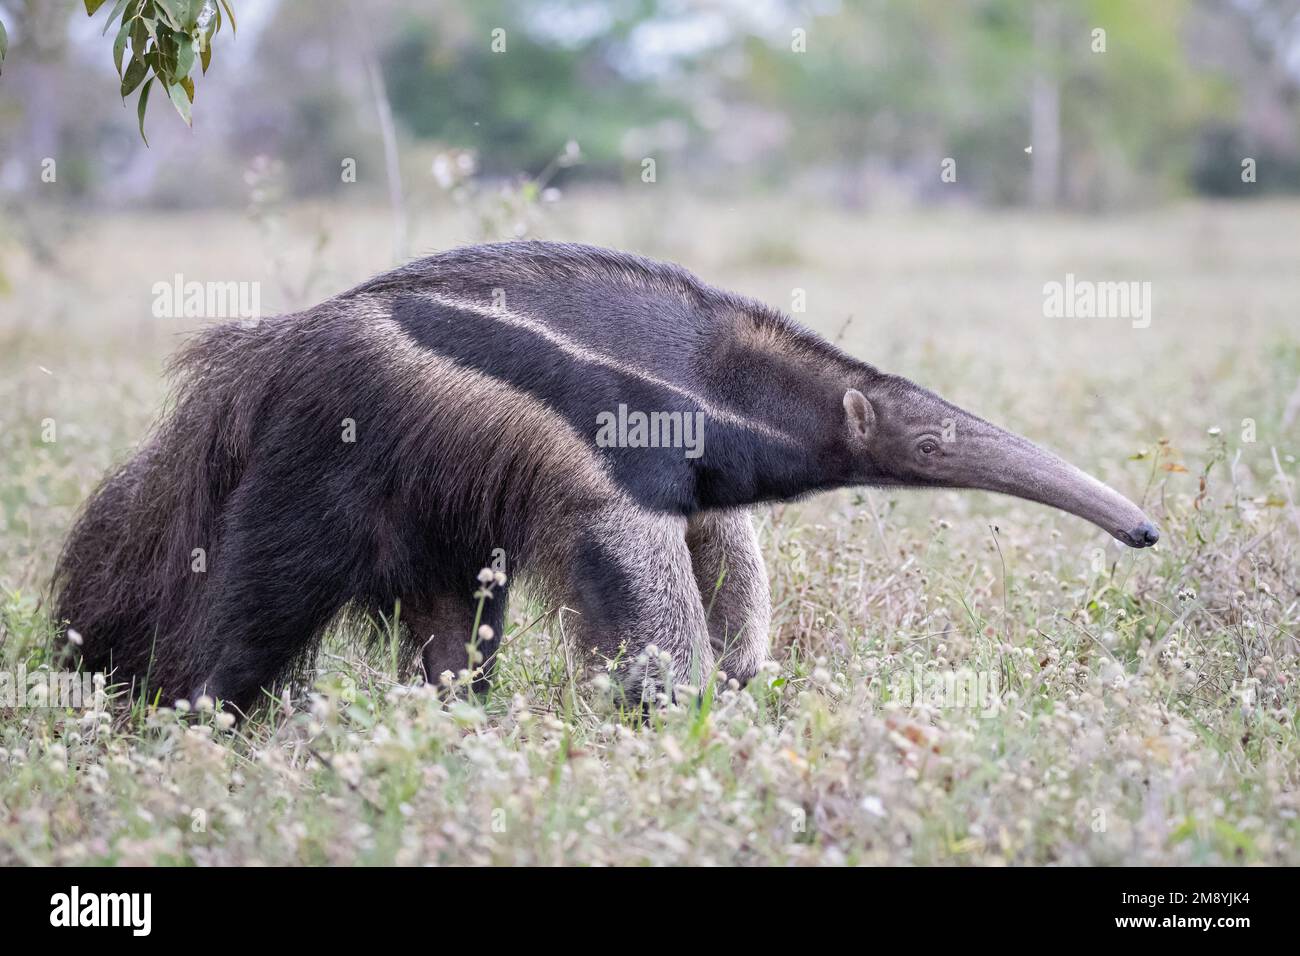 Ein riesiger Ameisenbär (Myrmecophaga tridactyla), der in der Trockenzeit durch das Grasland des Pantanal in Brasilien späht. Stockfoto